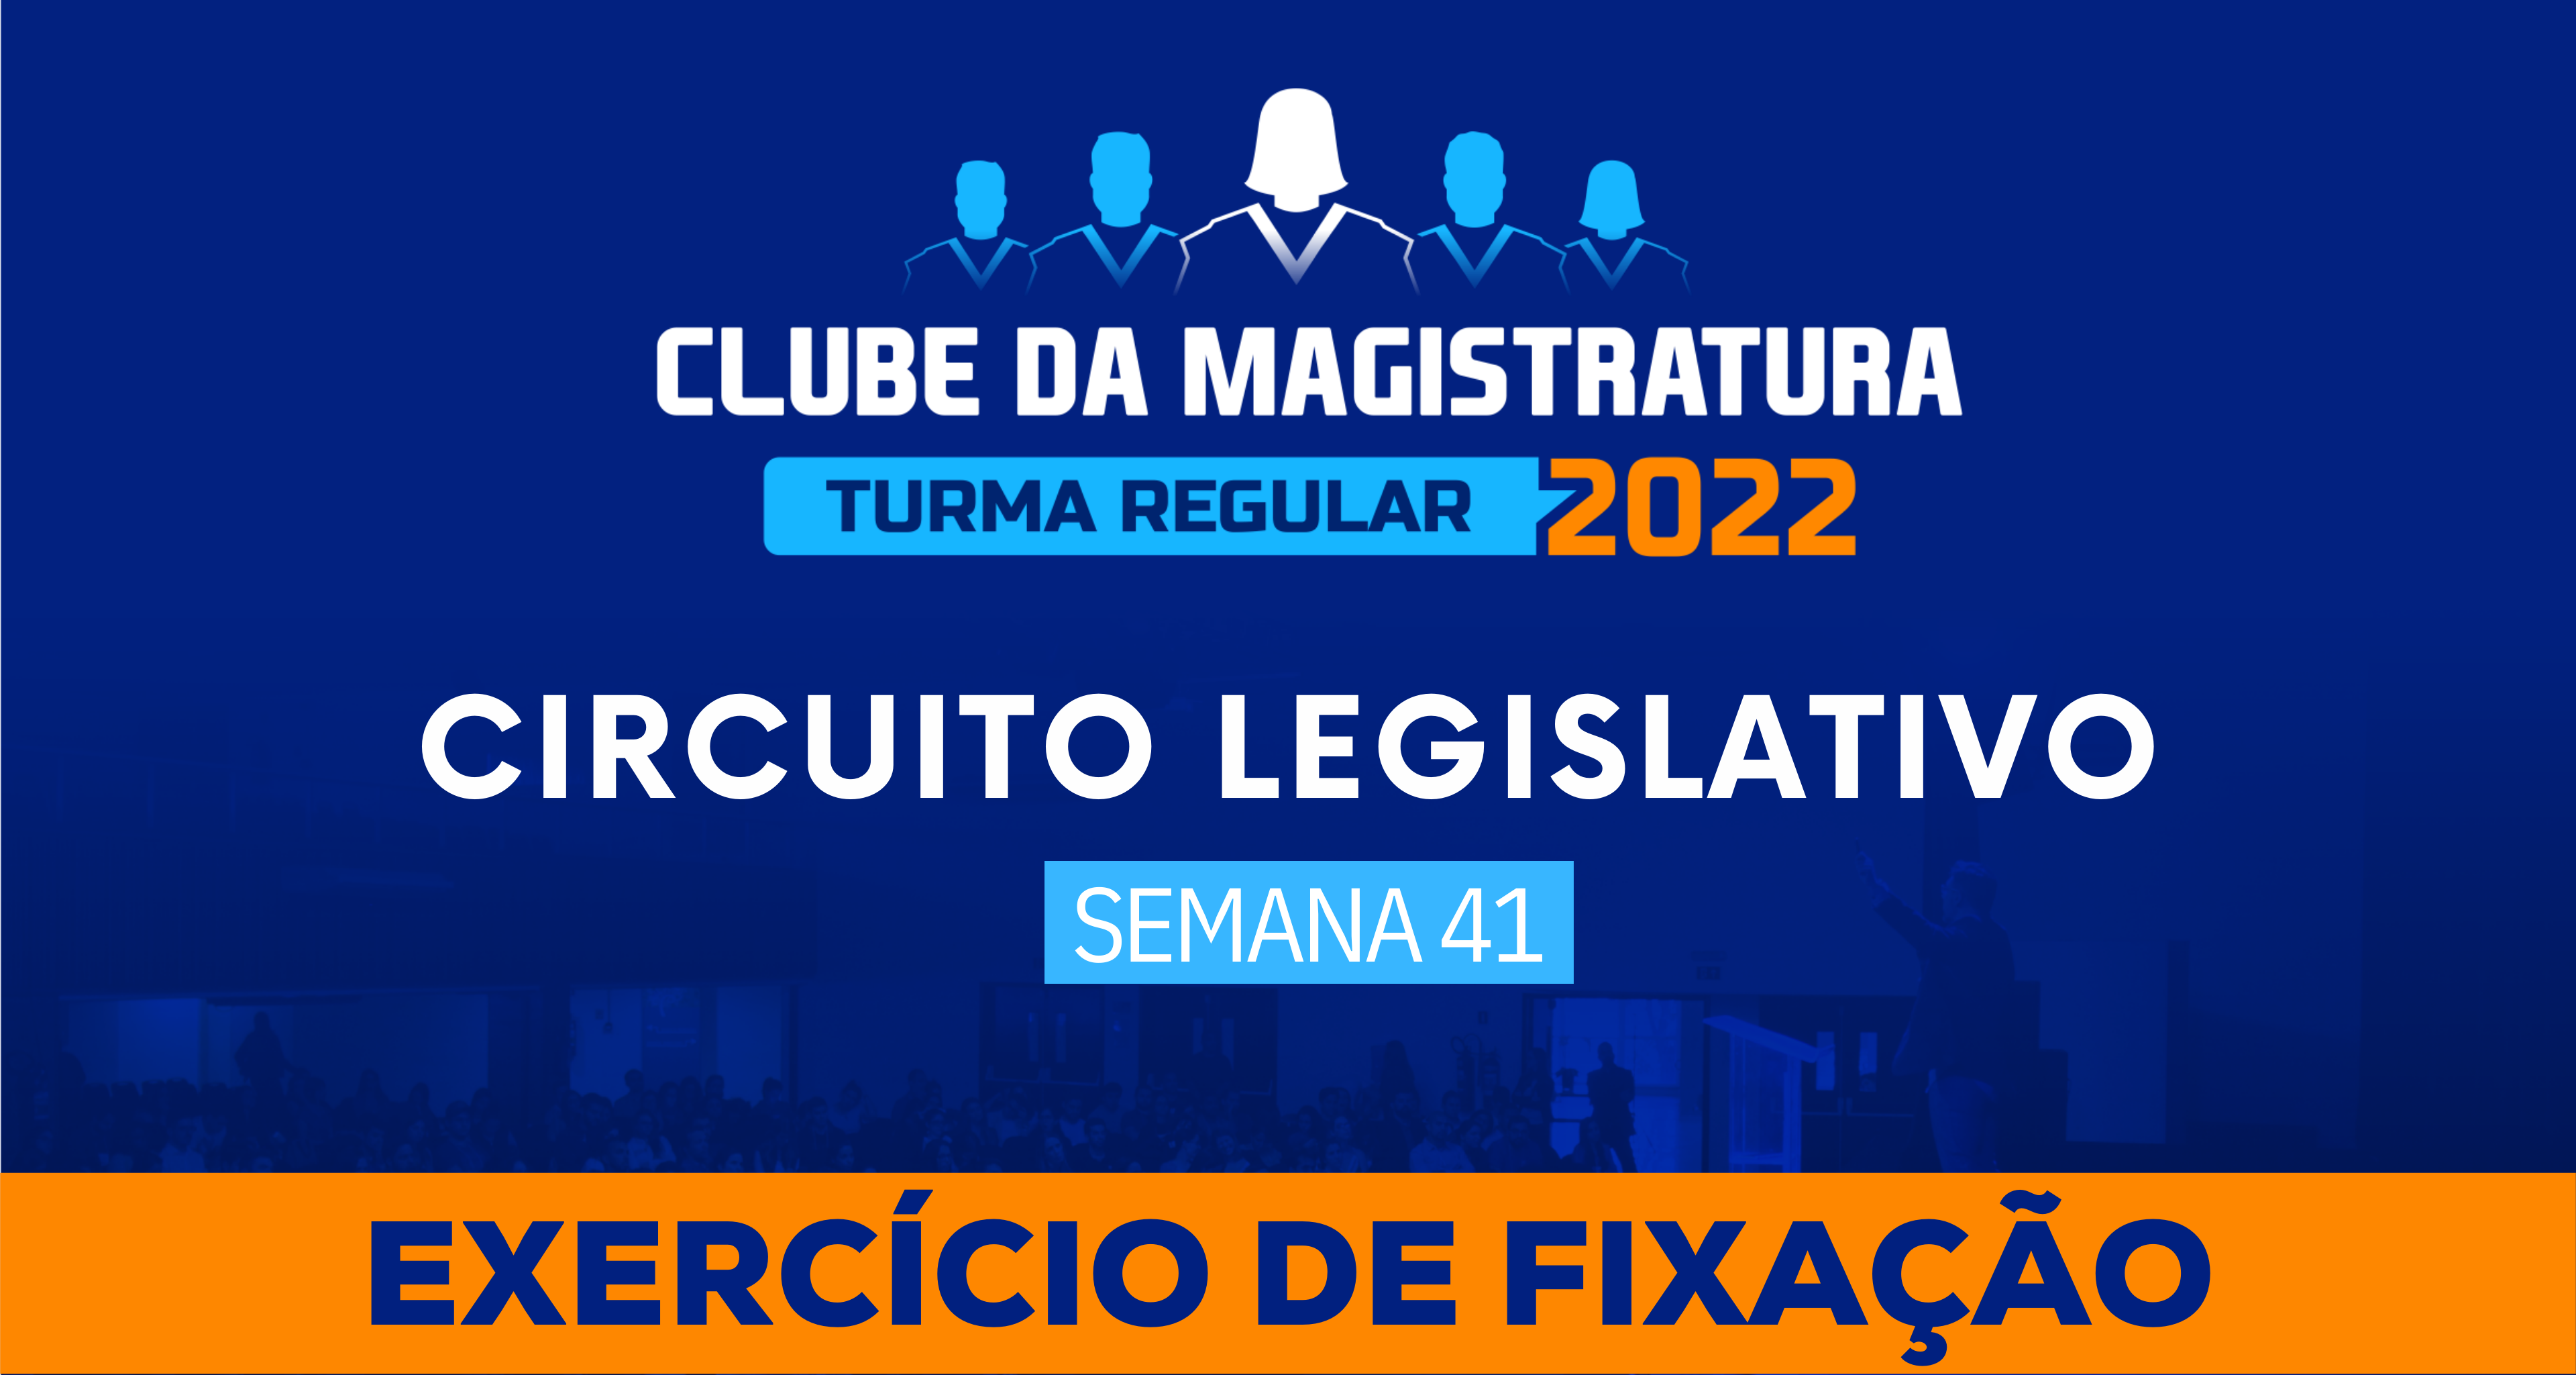 Circuito Legislativo 2022.1 (Clube da Magistratura - Semana 41)